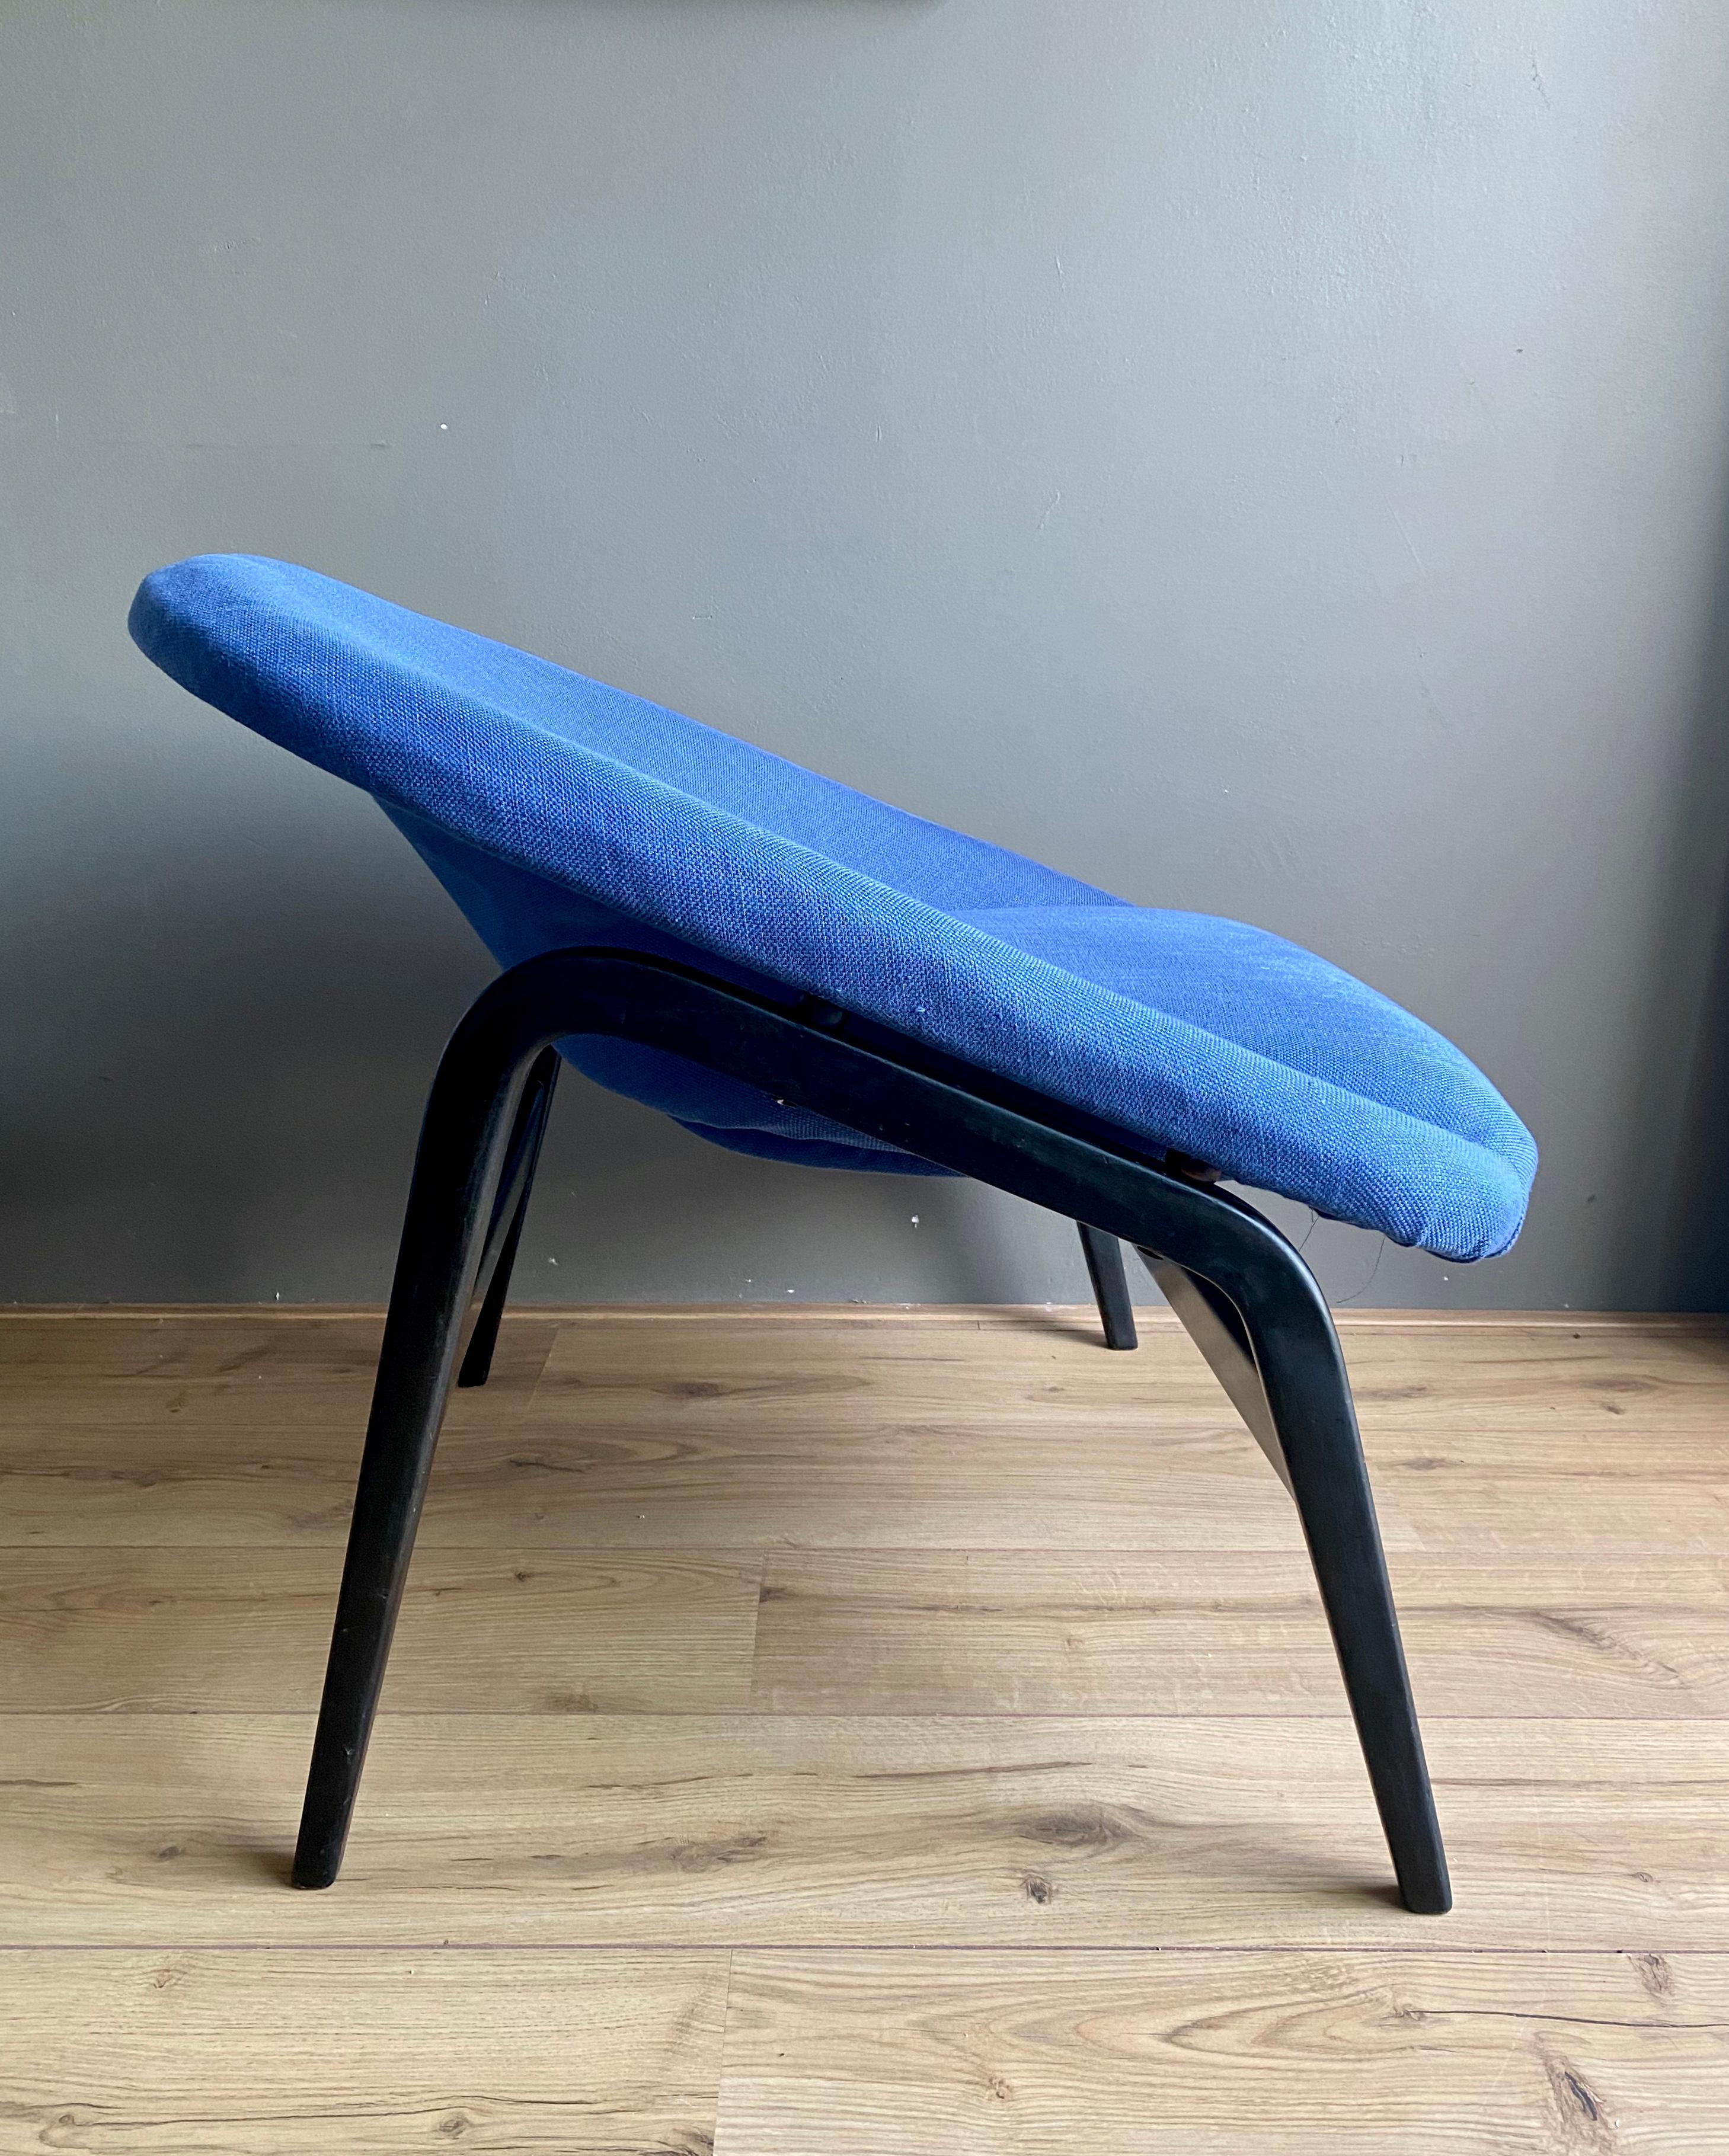 Rare fauteuil / chaise longue, conçu par Hartig Lohmeyer pour Artifort. La chaise a été retapissée de manière non professionnelle avec un tissu bleu et dispose d'une base en bois noir. Il a été fabriqué aux Pays-Bas et n'a pas été vendu en grand